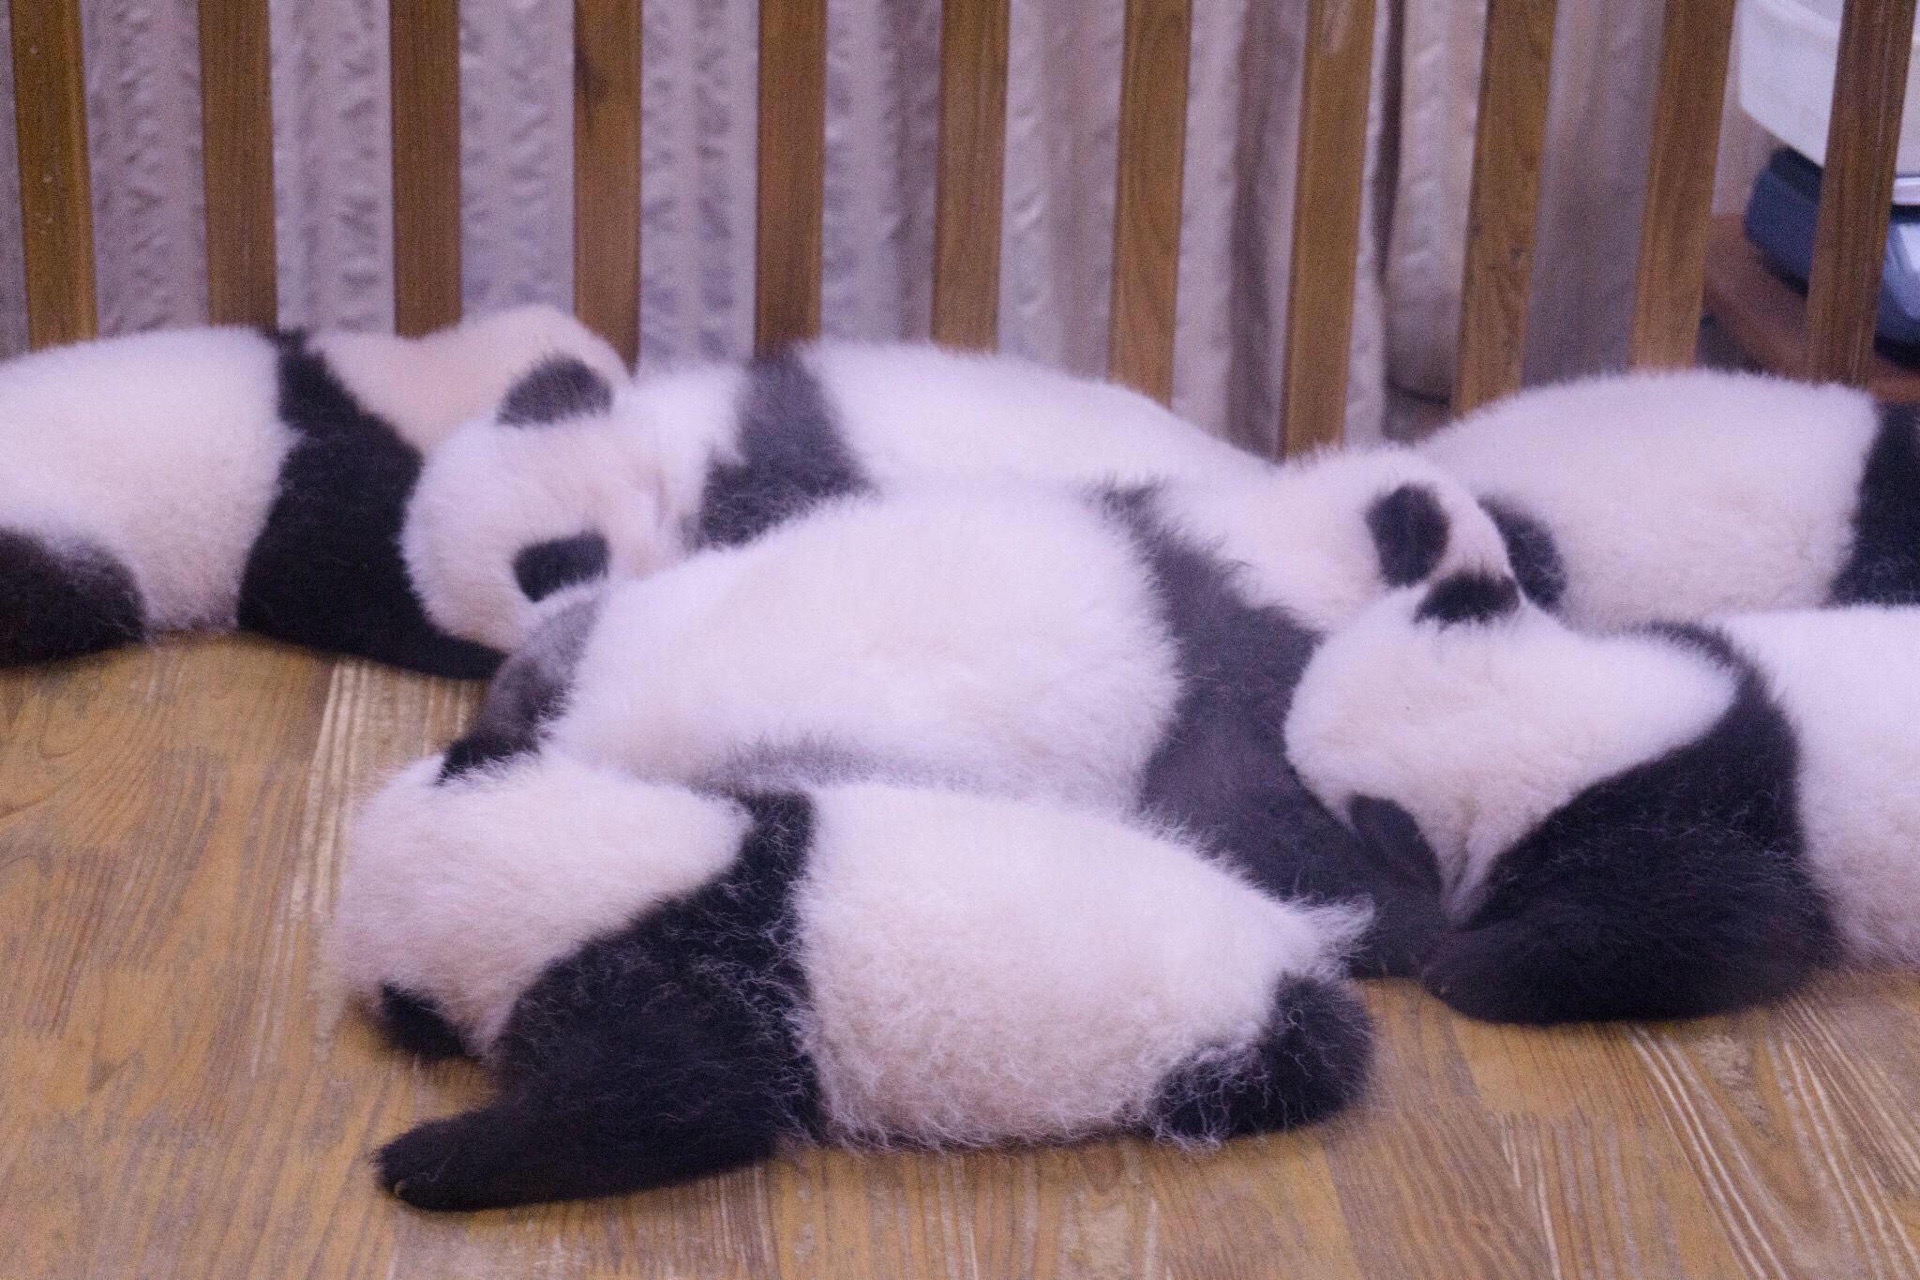 成都必打卡｜一定要去看看萌萌的大熊猫  ⚡️到成都旅游，不看国宝大熊猫的行程是不完整。萌萌的大熊猫很